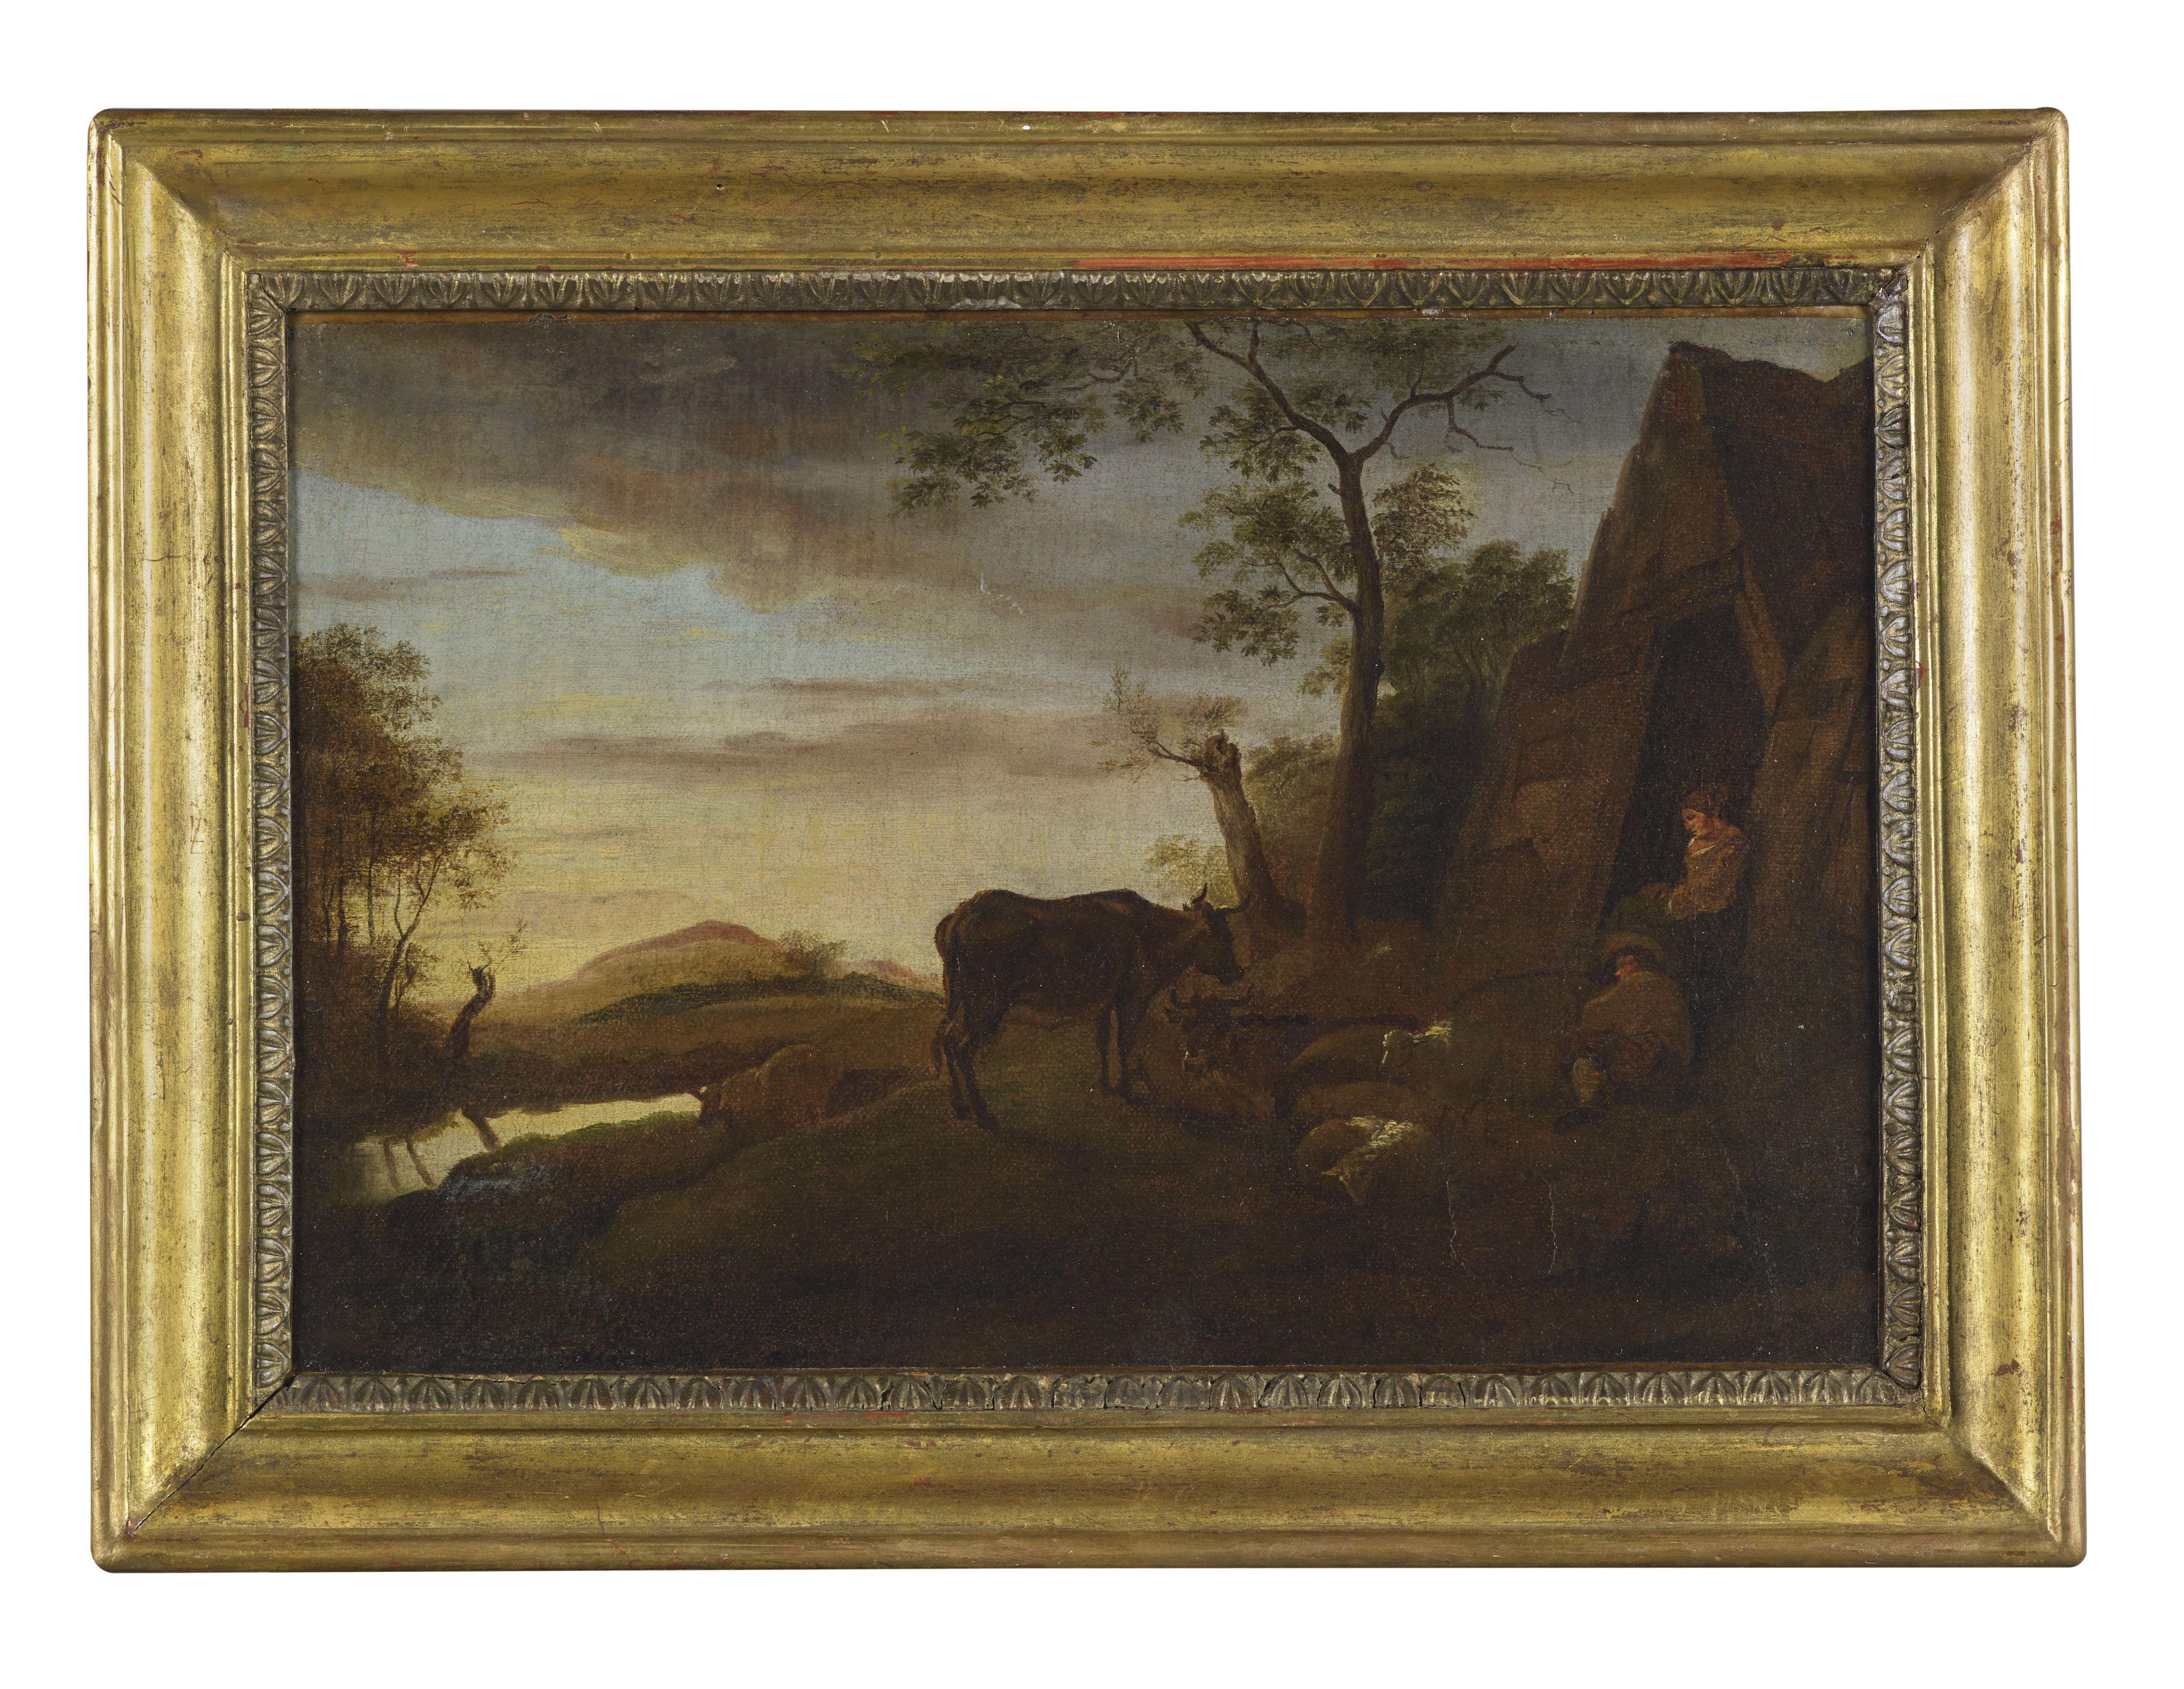 Landscape Painting Unknown - Paysage du XVIIIe siècle de l'école flamande Gens et vaches Huile sur toile verte